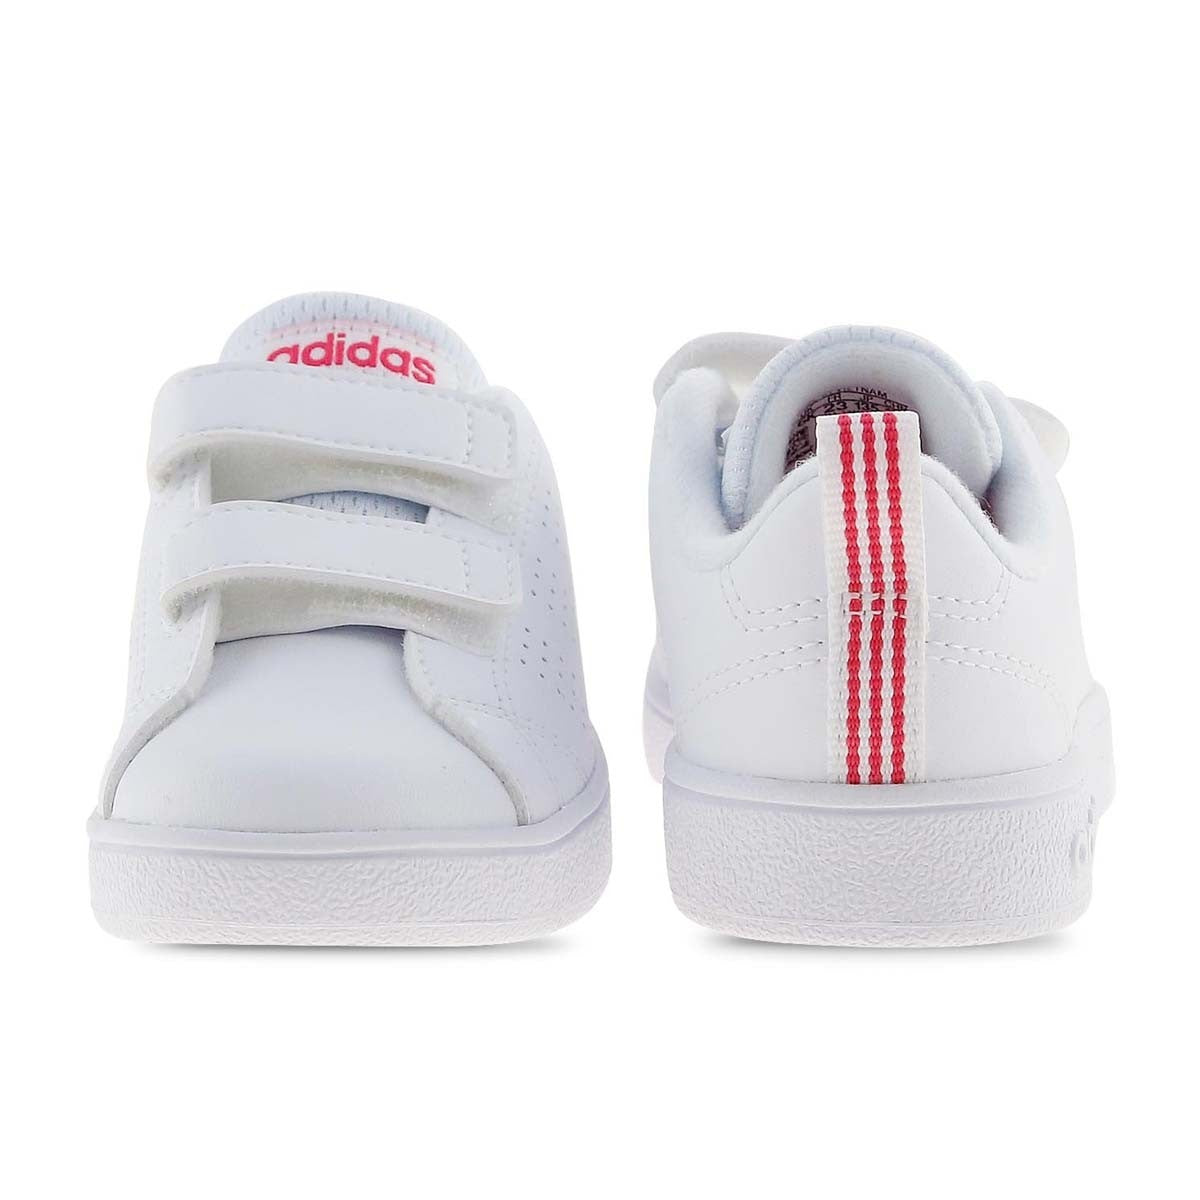 Adidas VS aDV CL sneakers da bambina BB9980 white